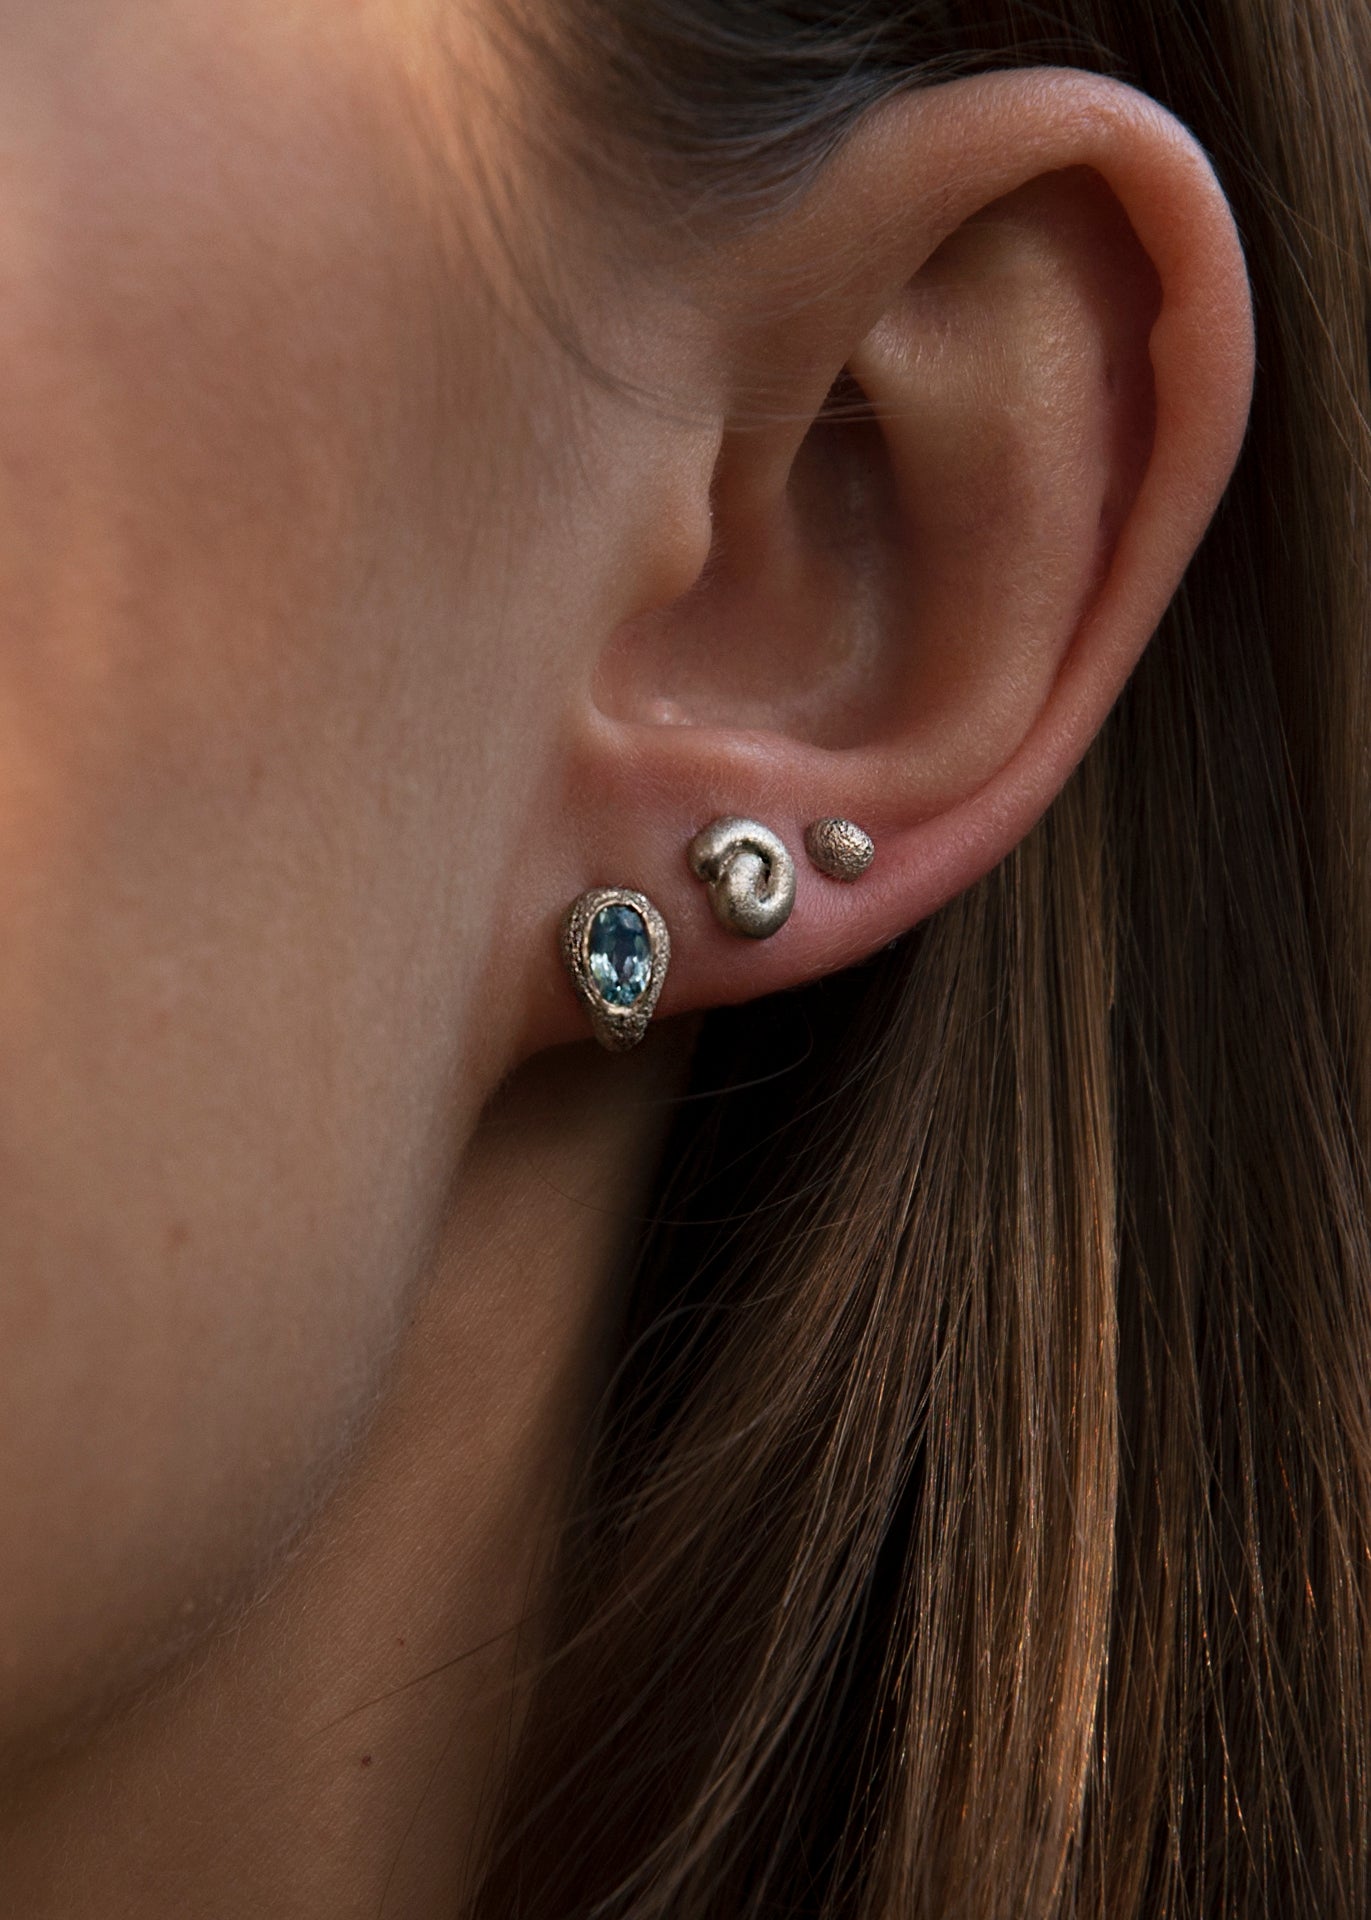 Fairmined gold SINGLE earrings / SNAIL